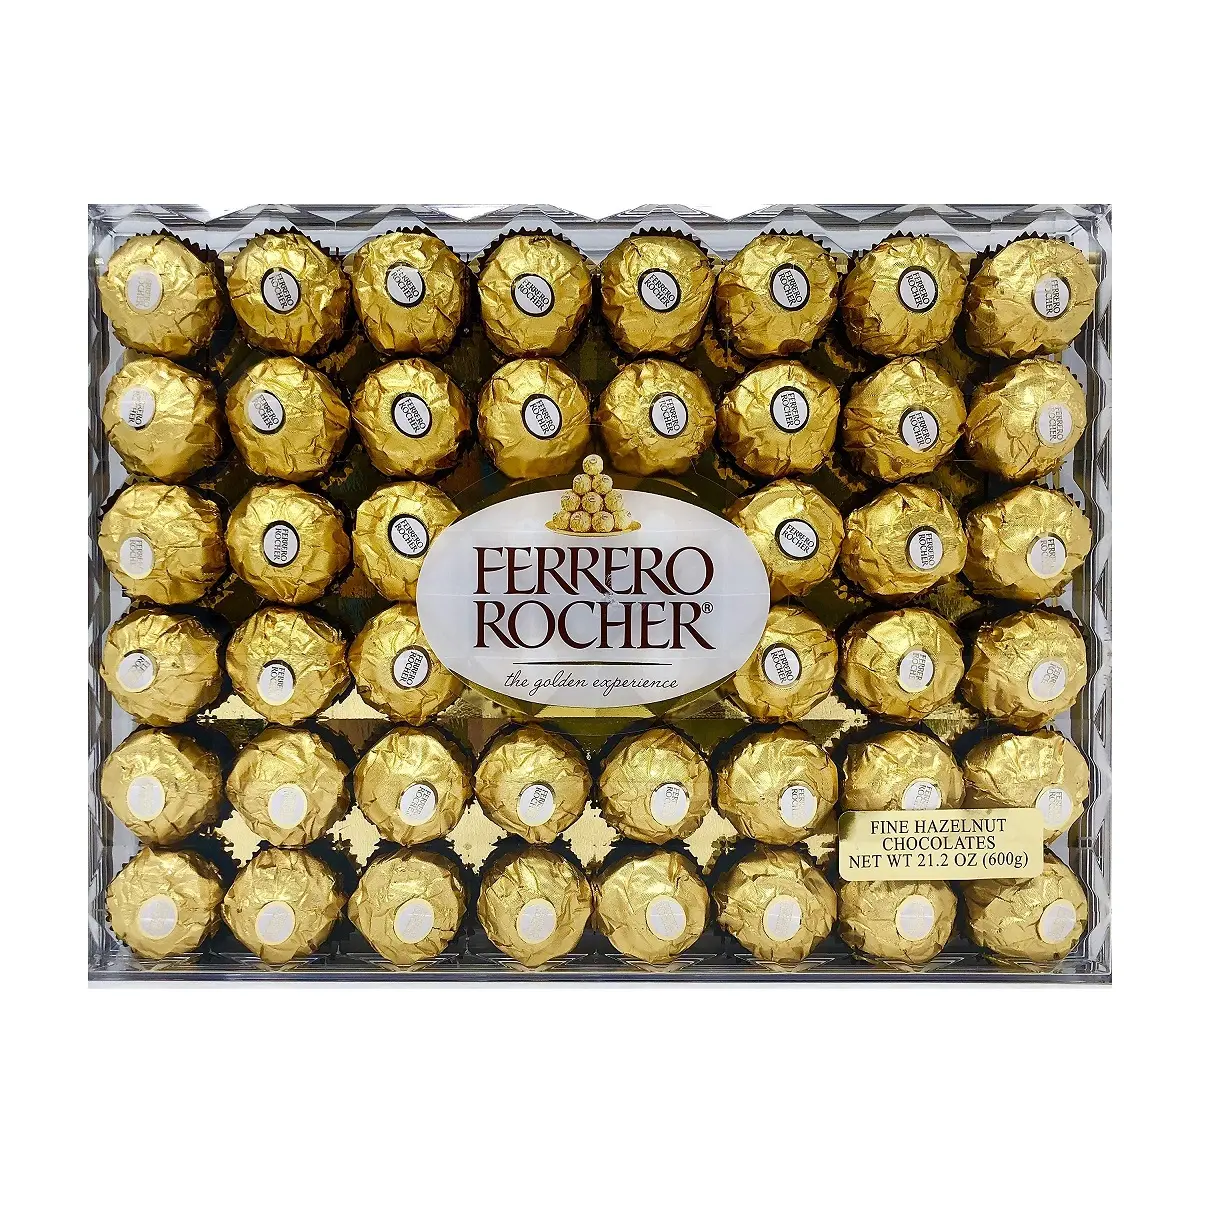 Confezione regalo Ferrero Rocher di alta qualità da 48 palline di cioccolato per occasioni speciali a prezzi all'ingrosso dall'esportatore statunitense